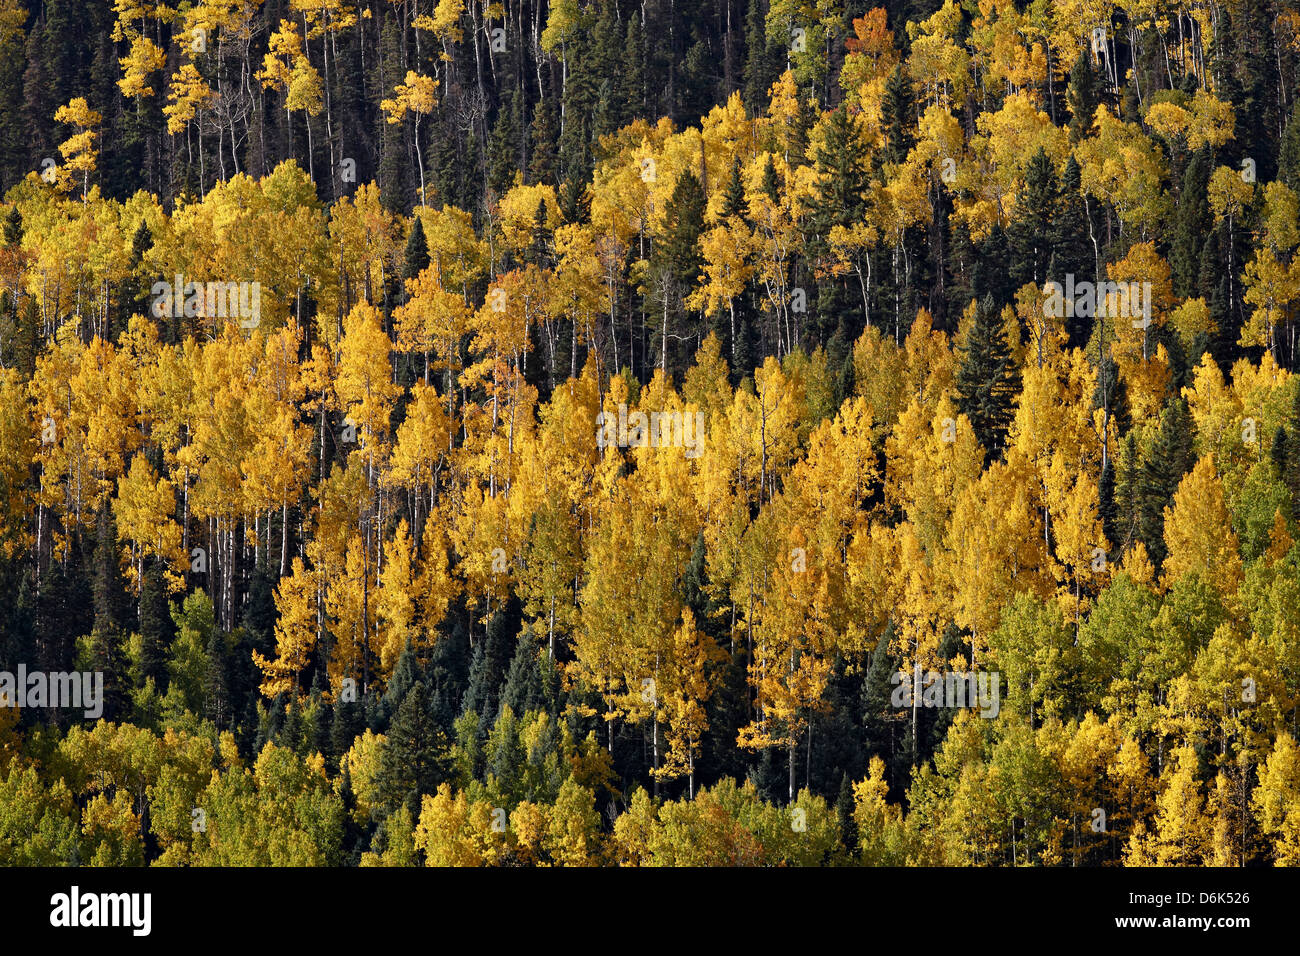 Gelb und orange Espen unter Evergreens im Herbst Uncompahgre National Forest, Colorado, USA Stockfoto